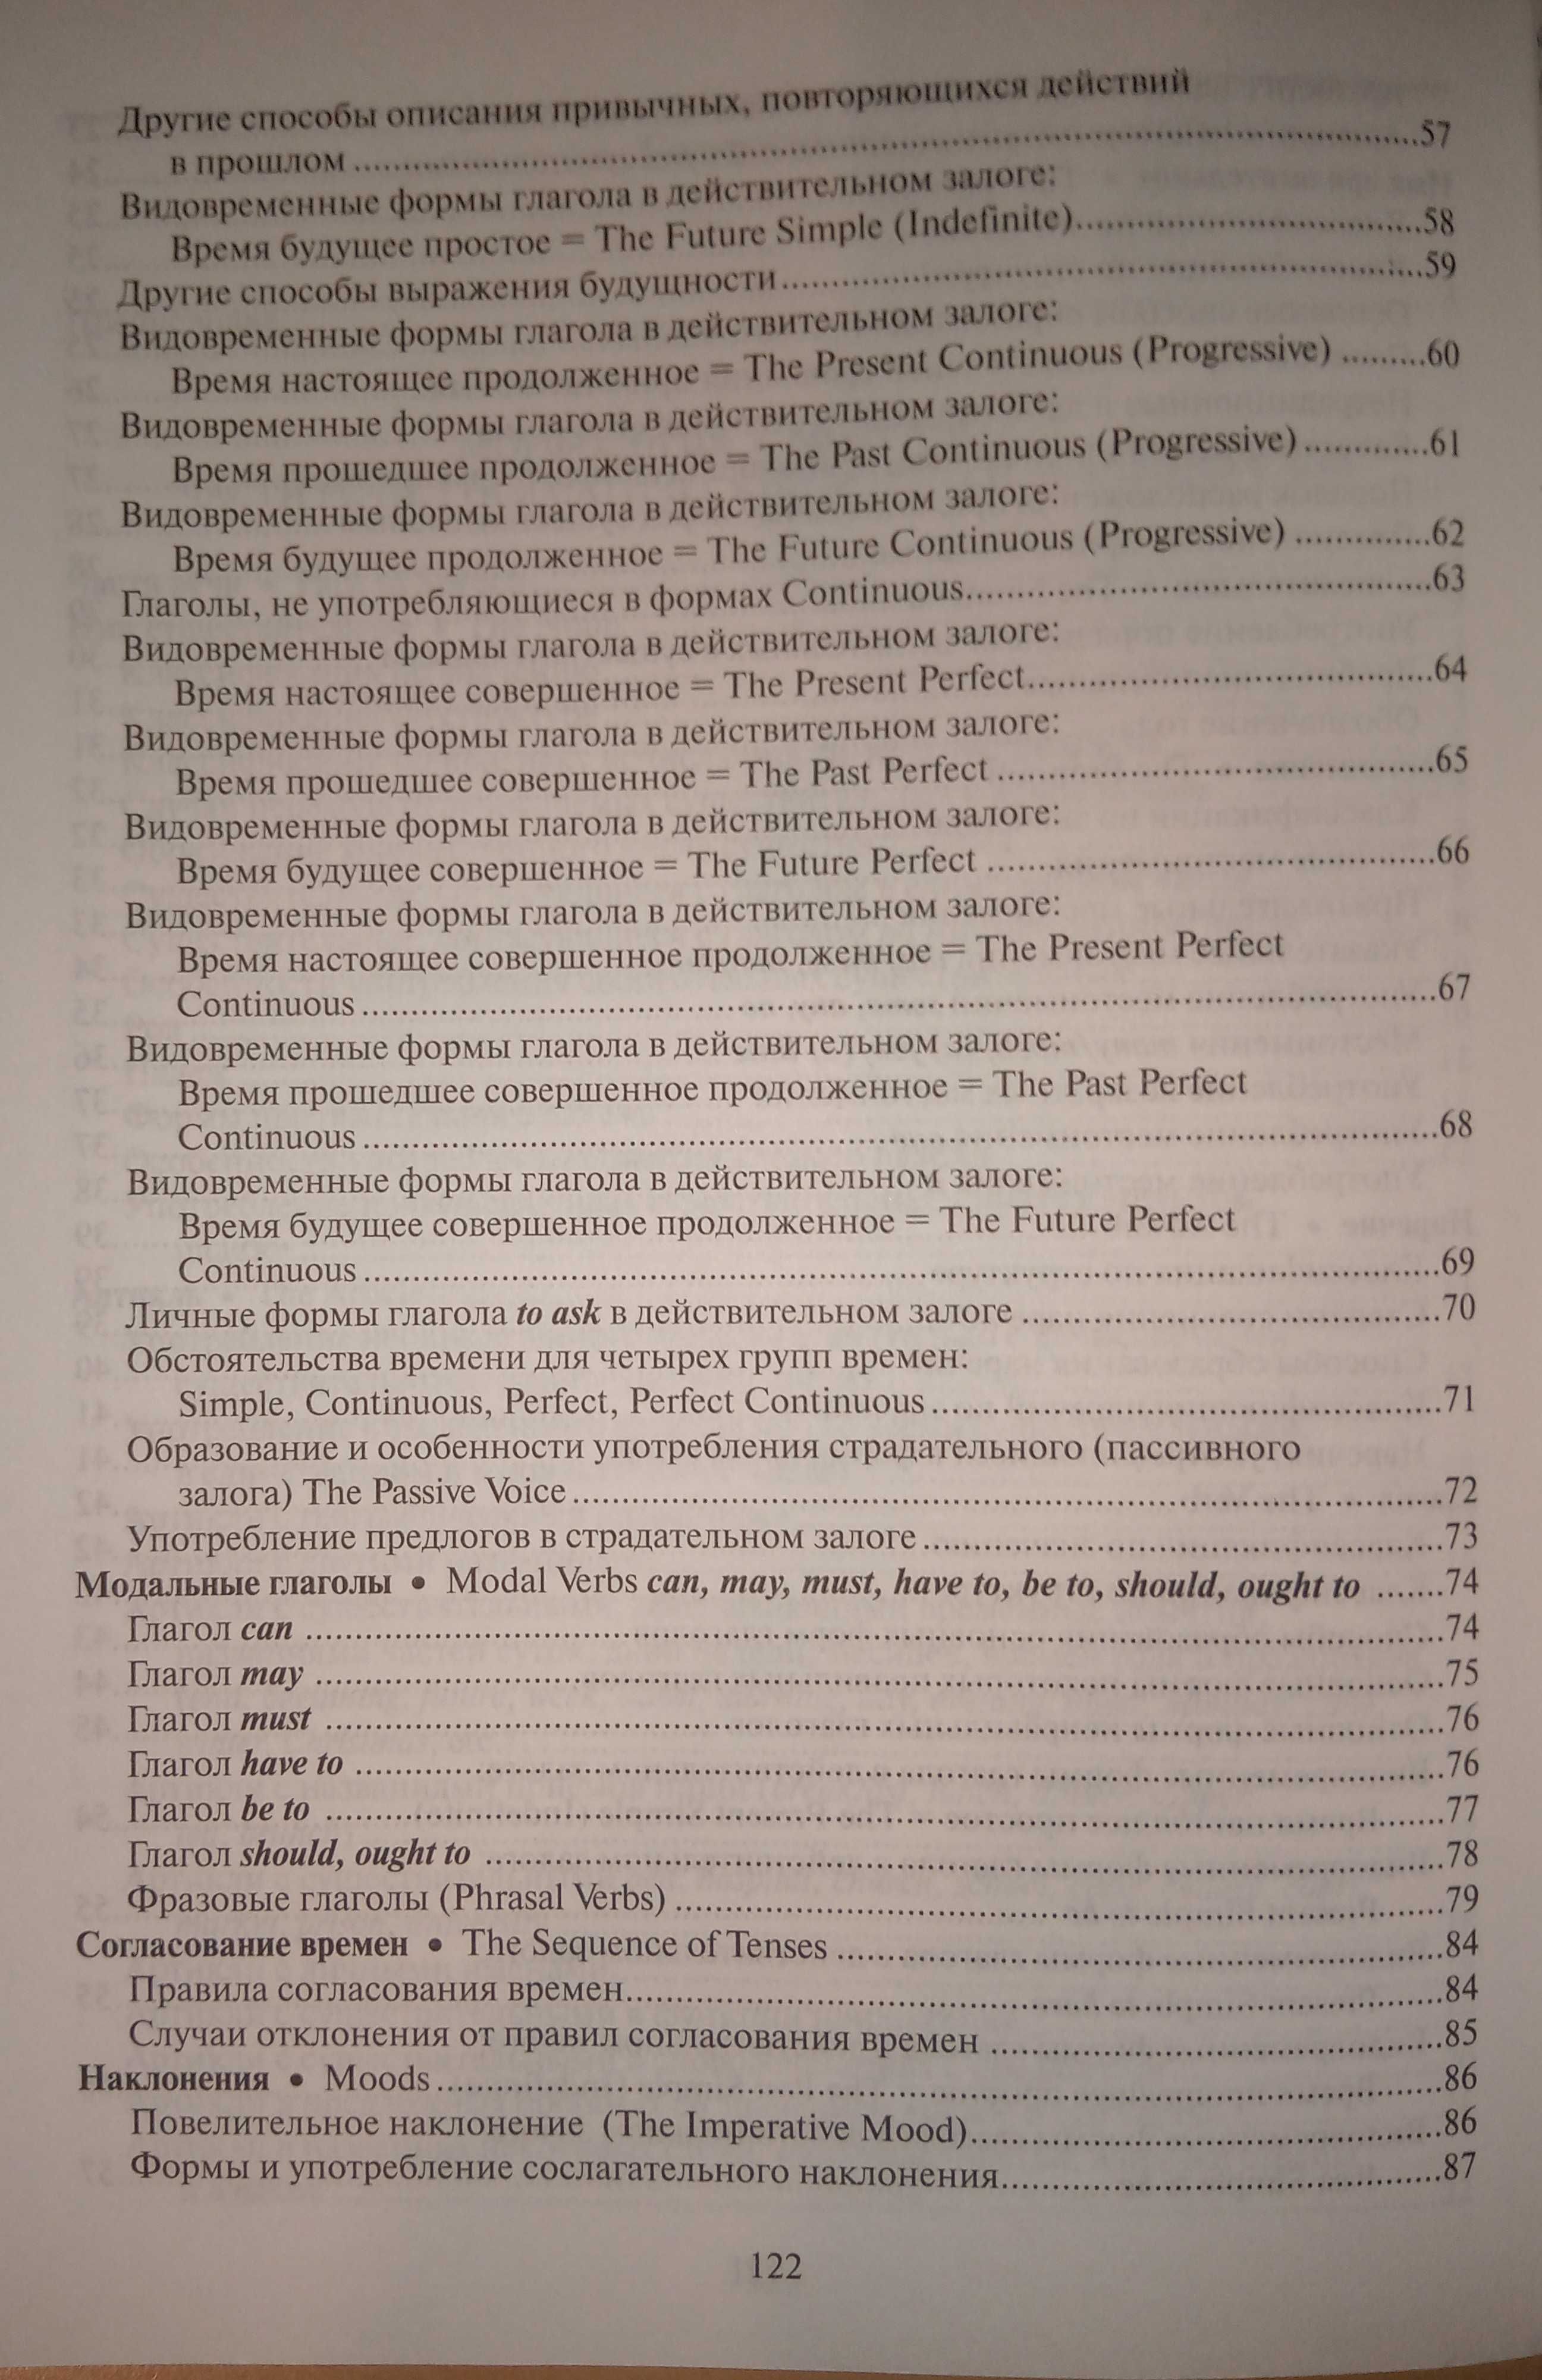 Английская грамматика в таблицах. Е.В.Угарова, Айрис-Пресс 2012